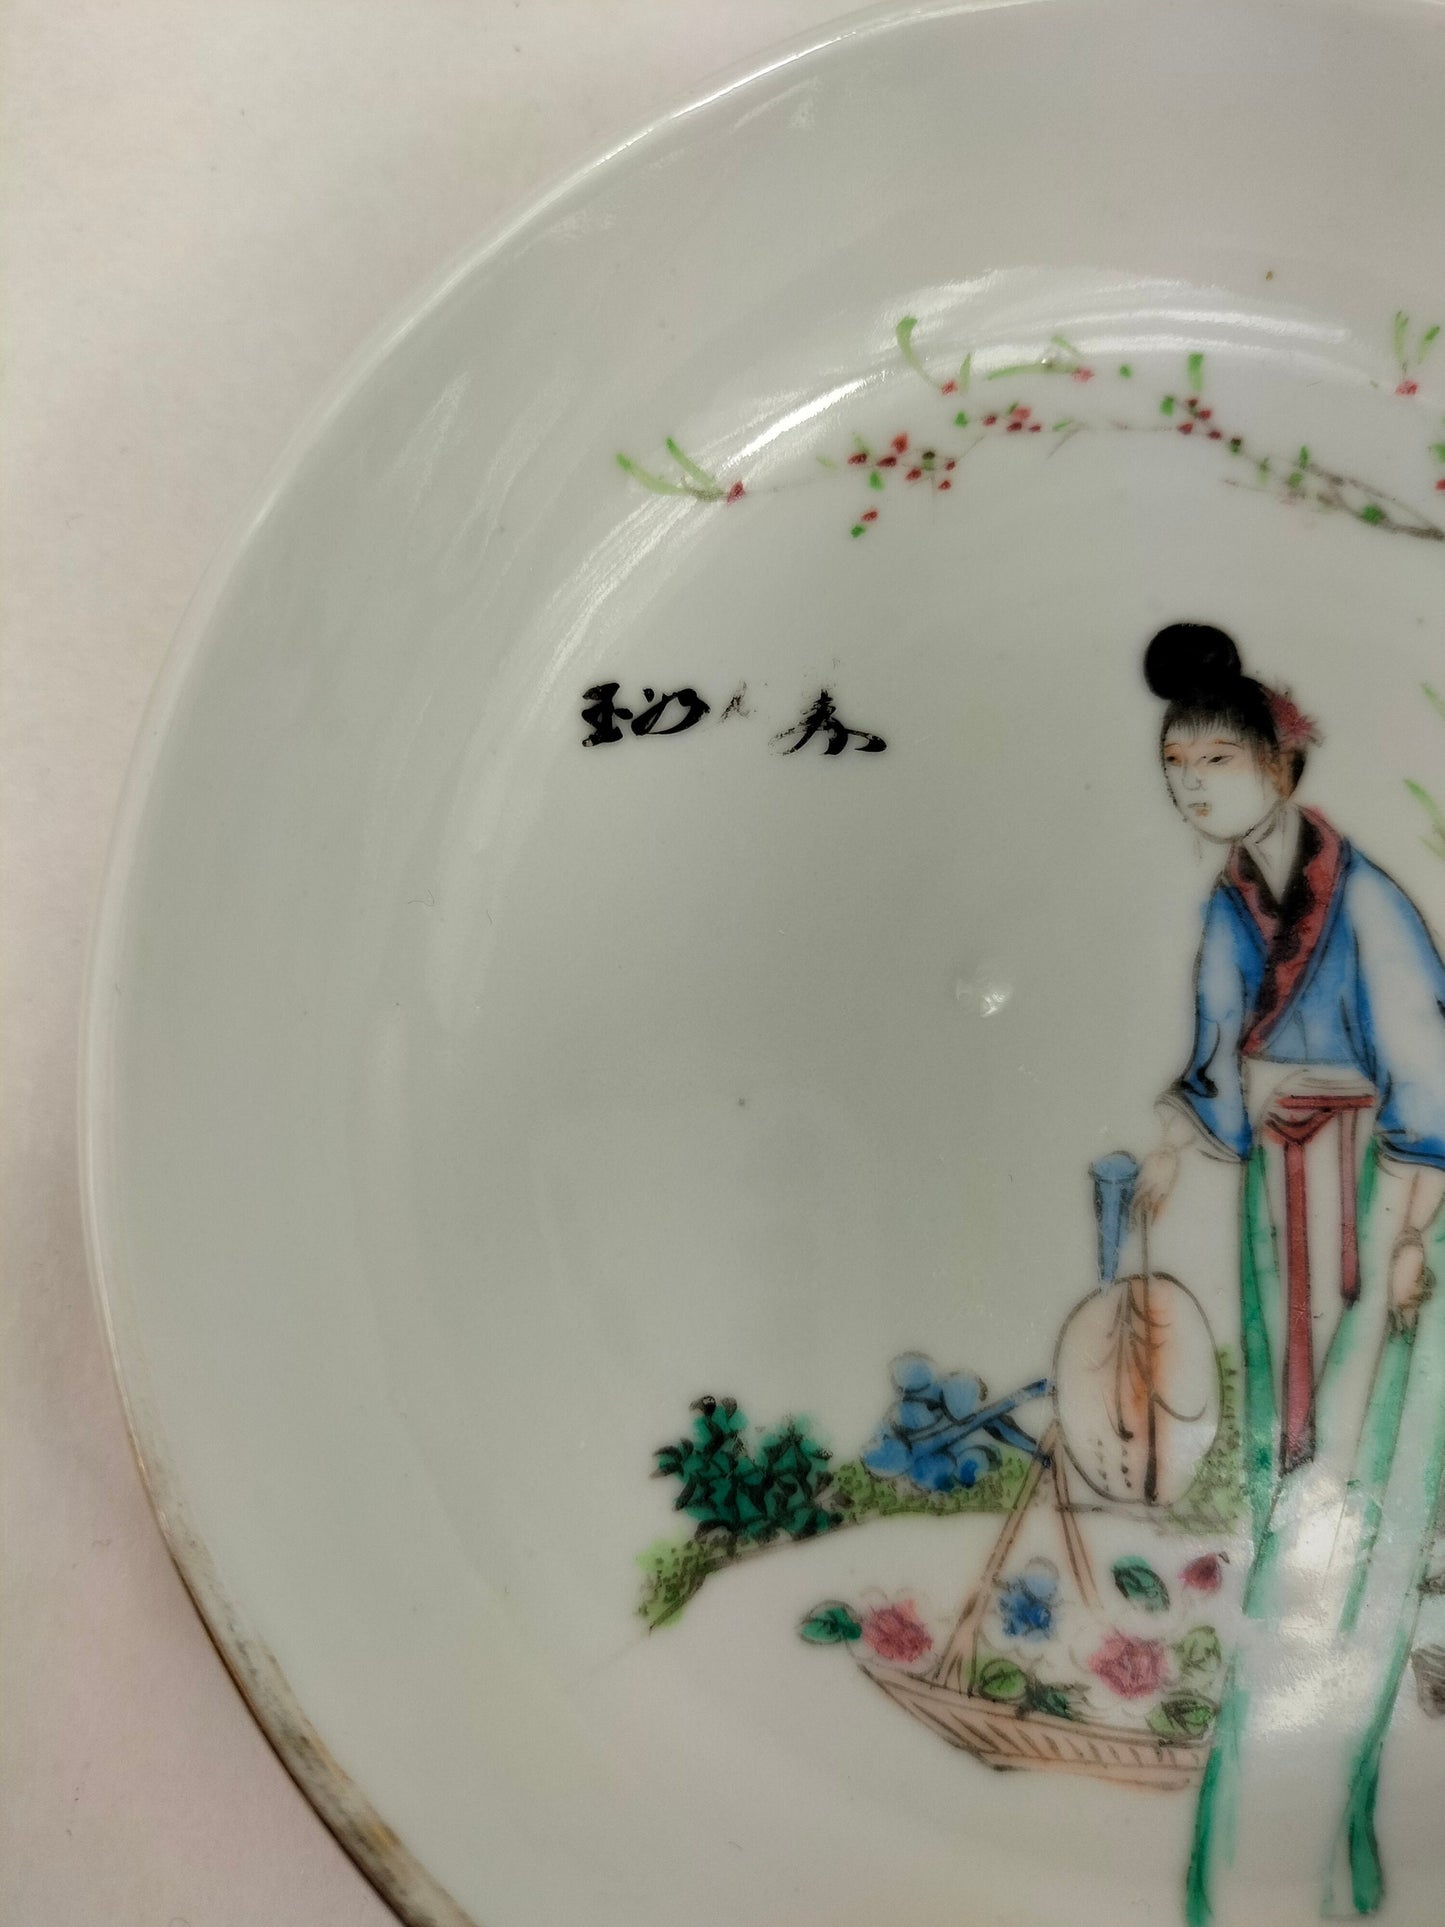 园林场景中饰有中国女士的中国古董盘 // 民国时期（1912-1949）